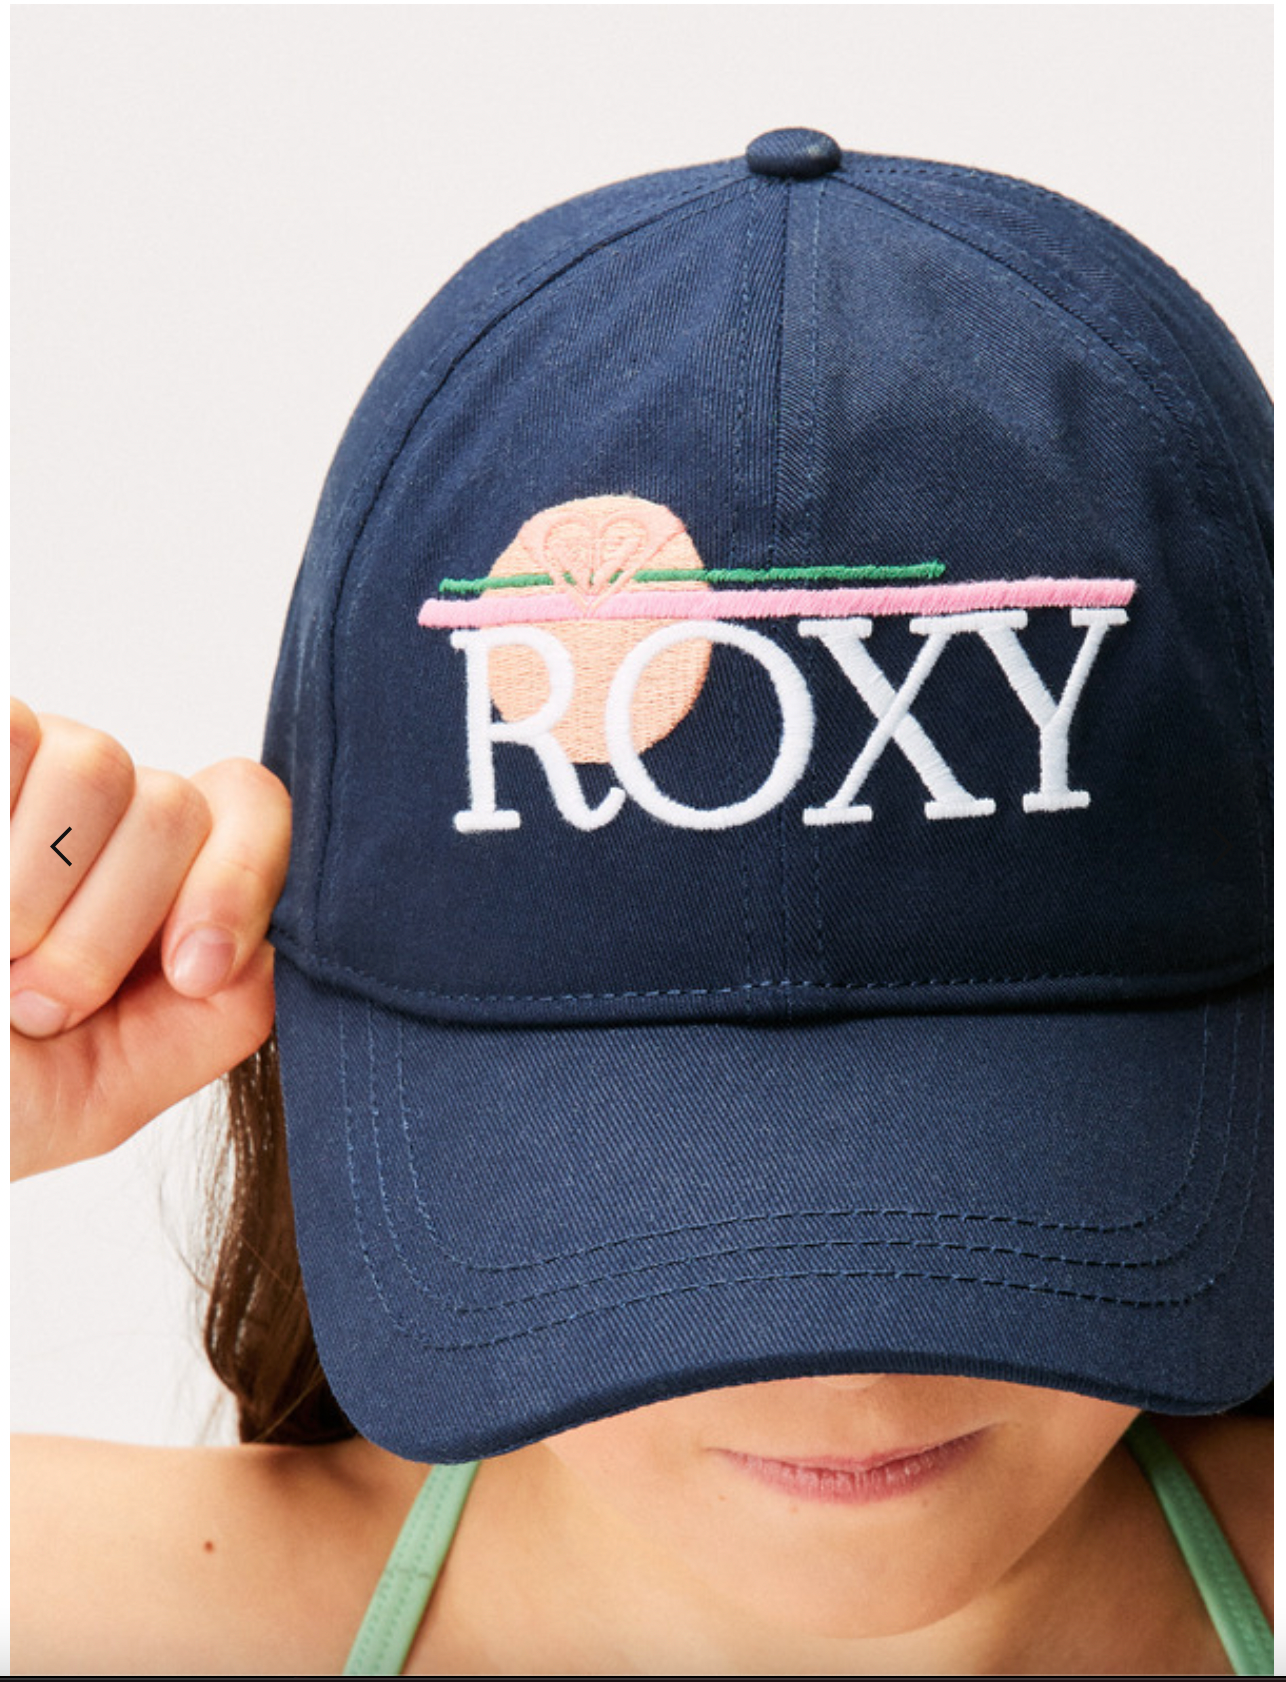 ROXY Blondie Girl - Baseball Cap for Girls